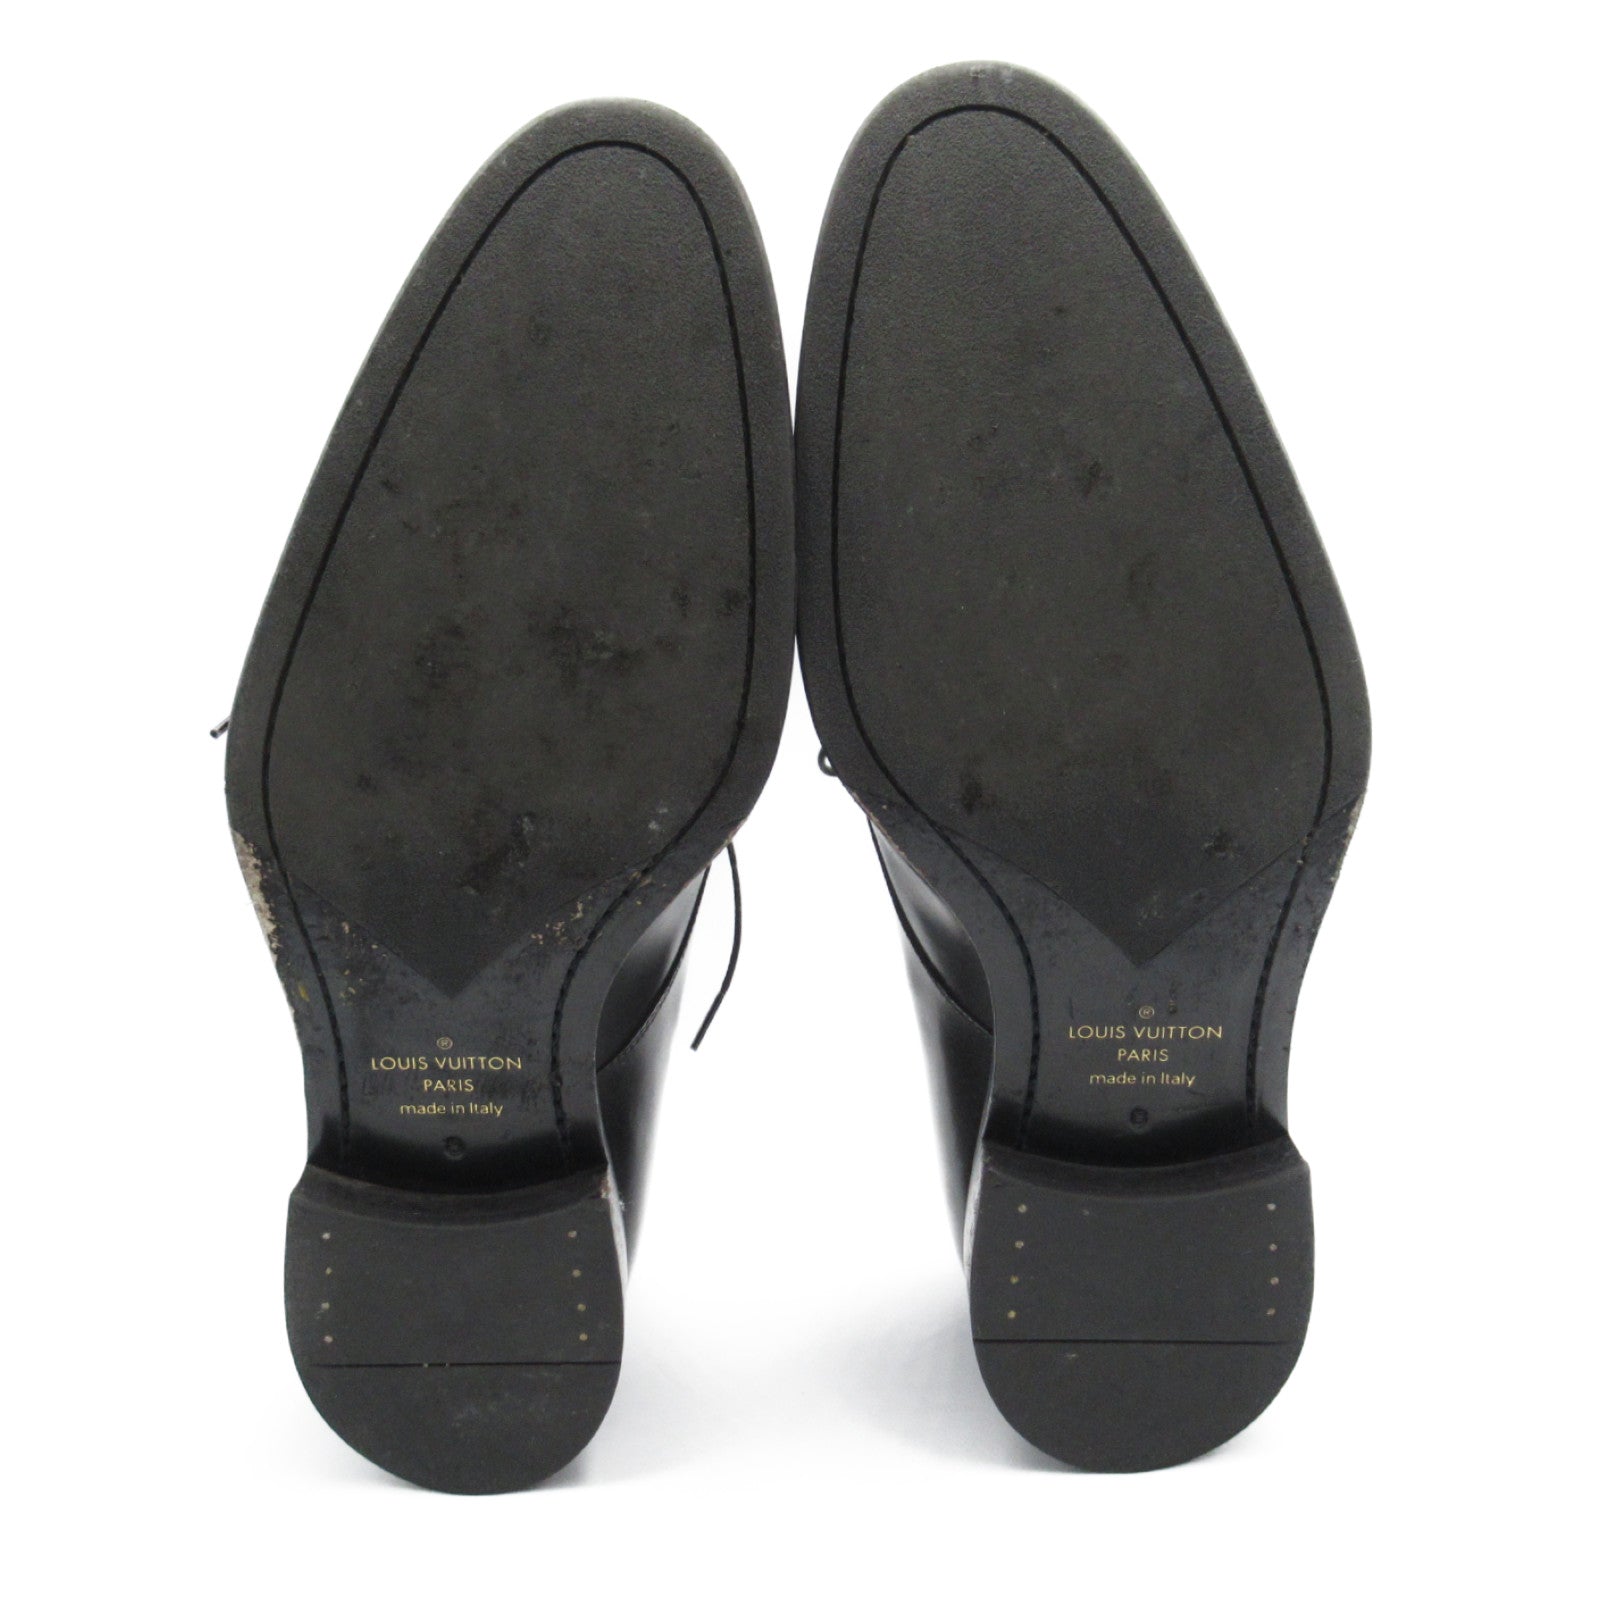 Louis Vuitton Louis Vuitton Marso-r Leather Shoes Leather  Black